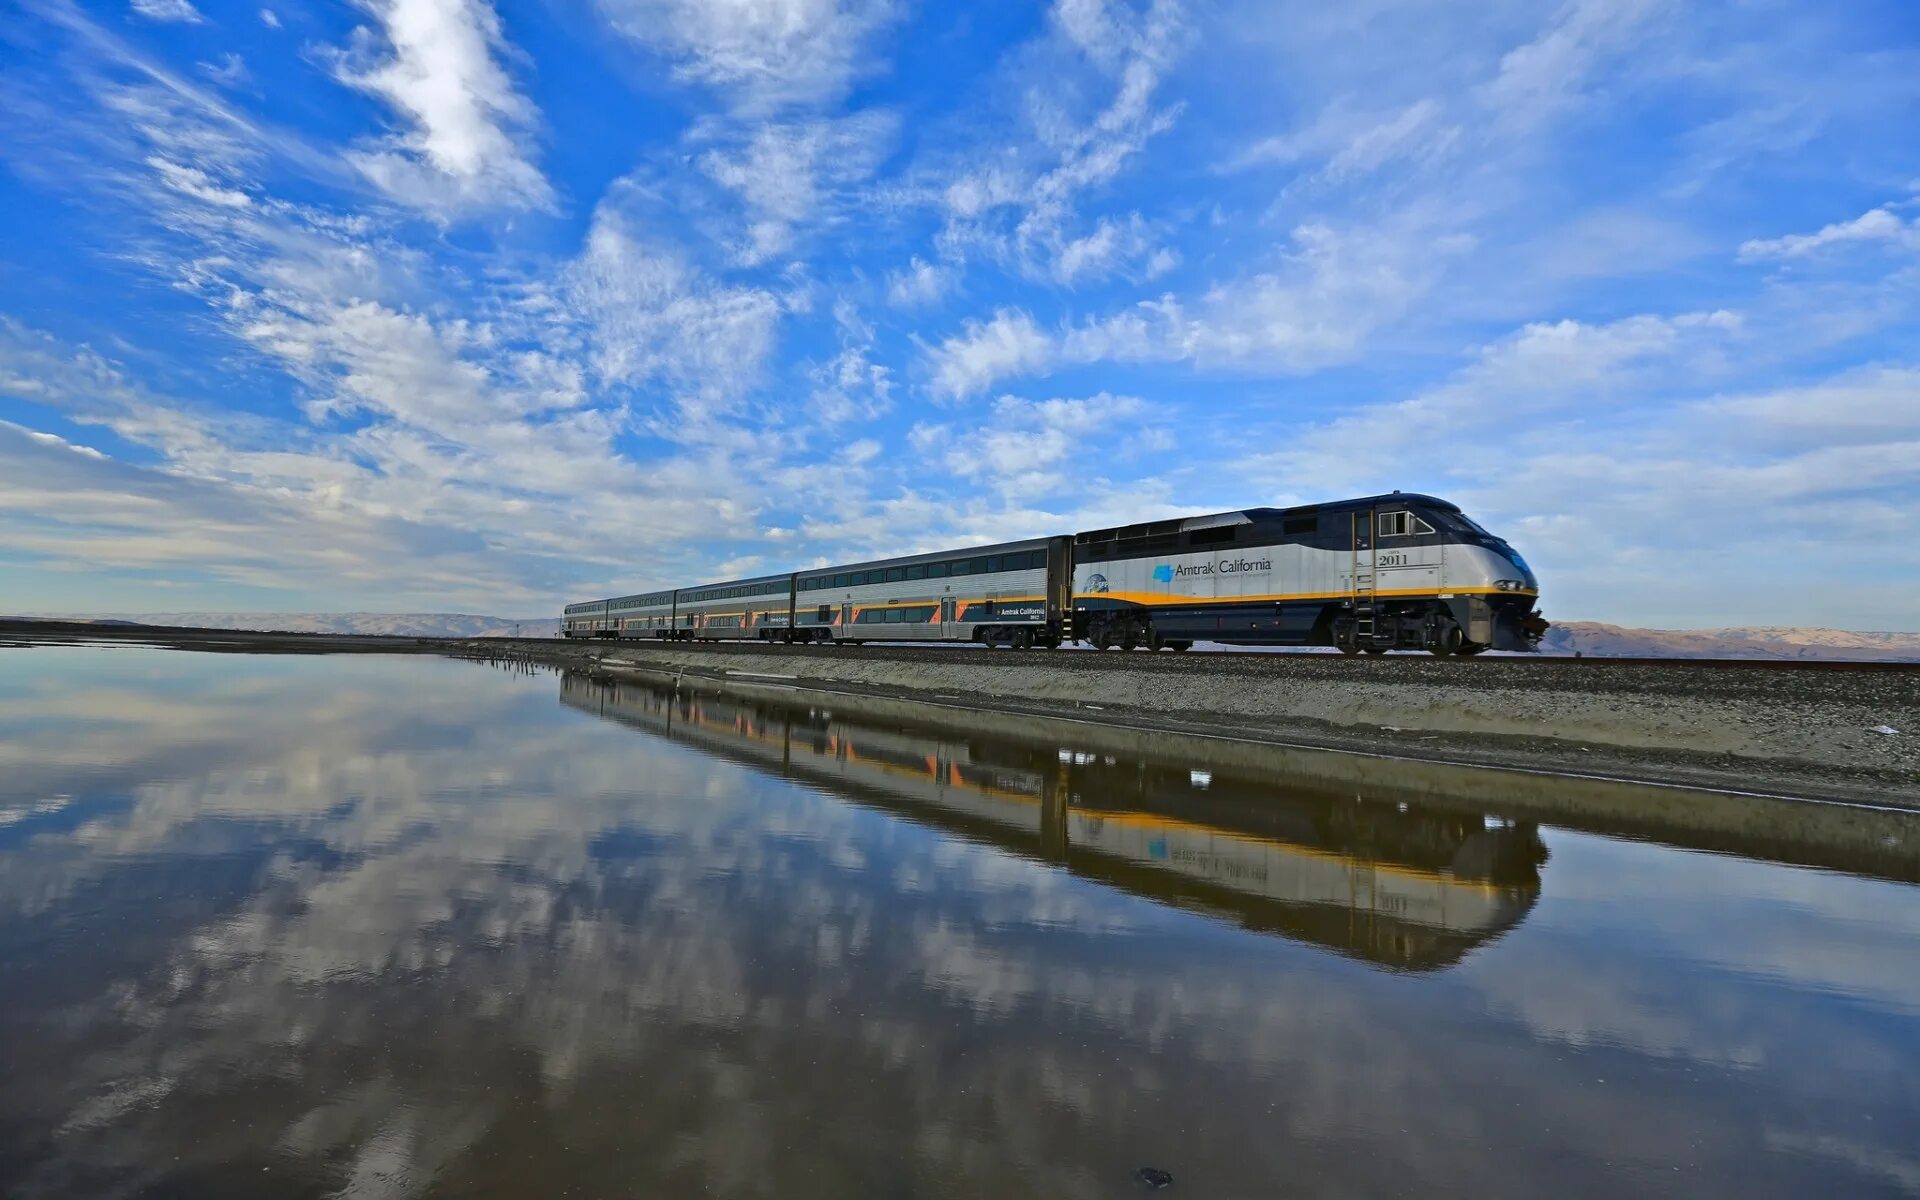 Электричка речной береговая. Поезд Amtrak California. Красивый поезд. Красивые фото поездов. Железная дорога на воде.